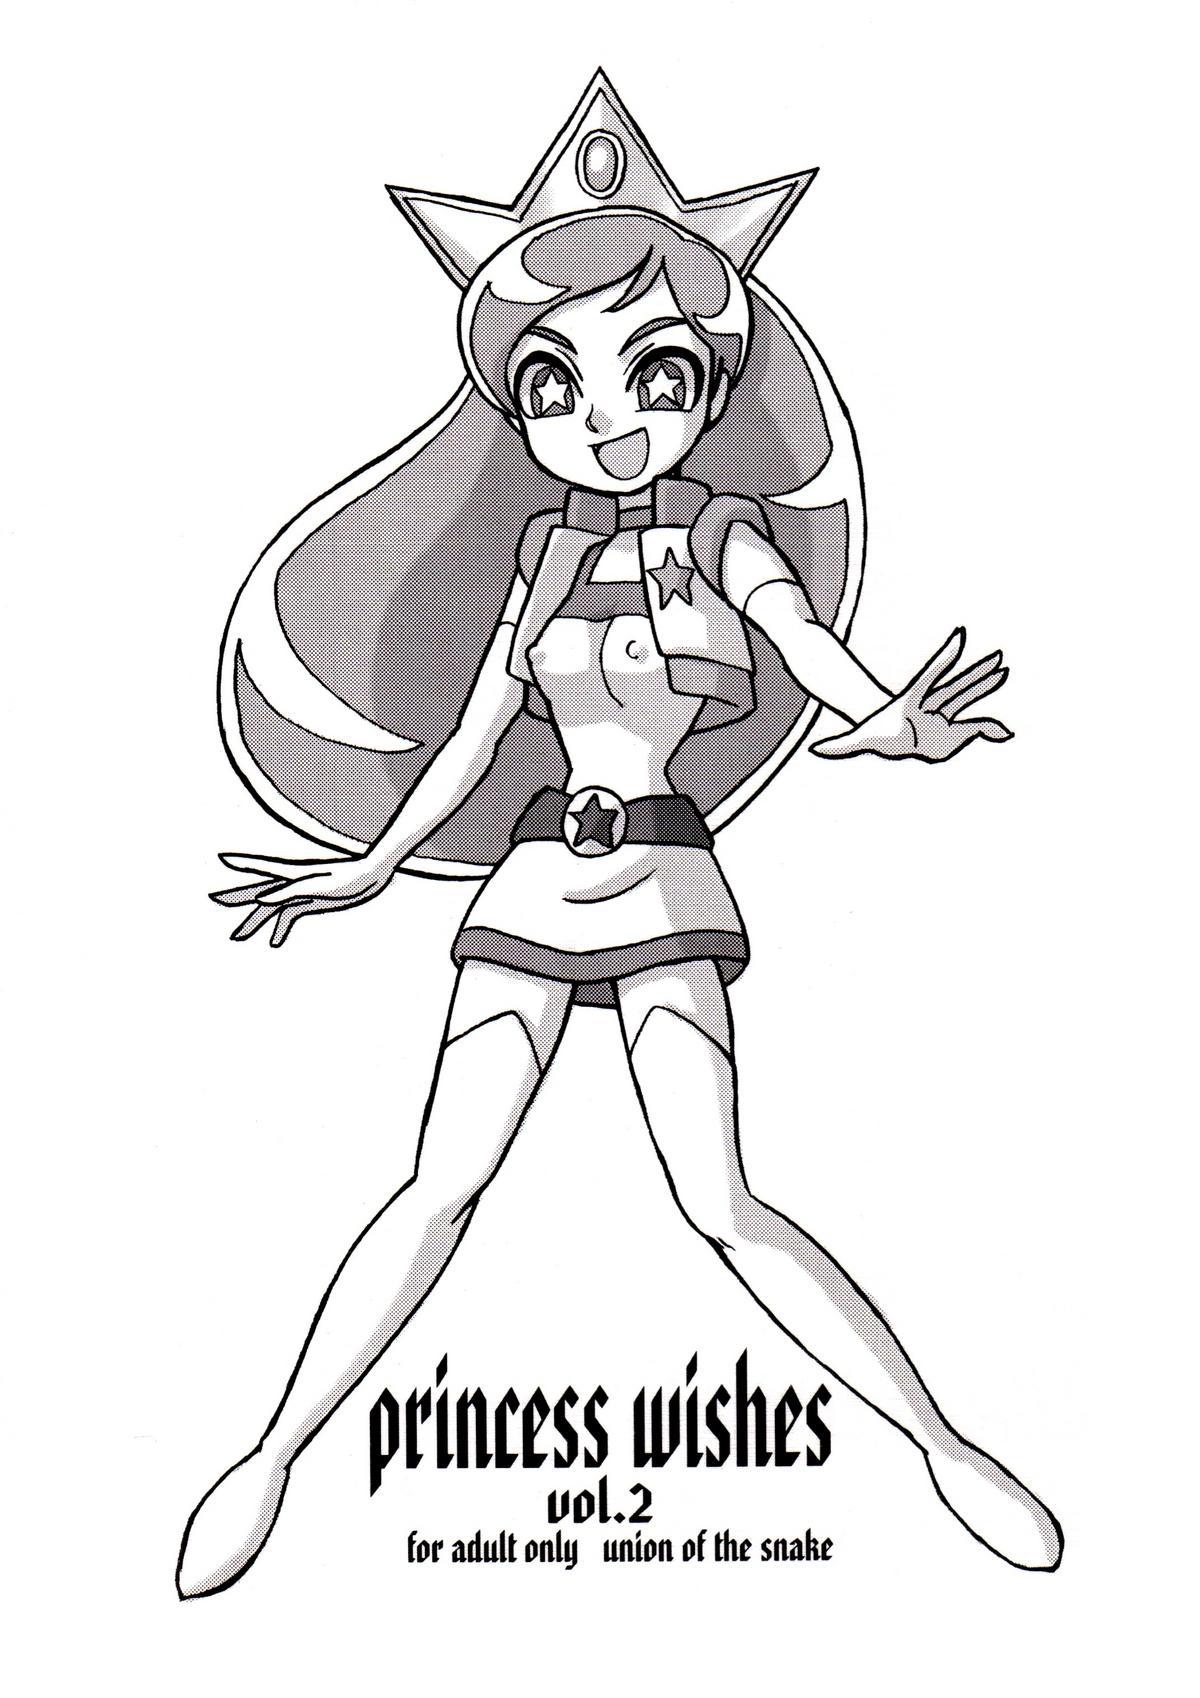 Kitchen princess wishes vol. 2 - Powerpuff girls z Cdmx - Picture 1